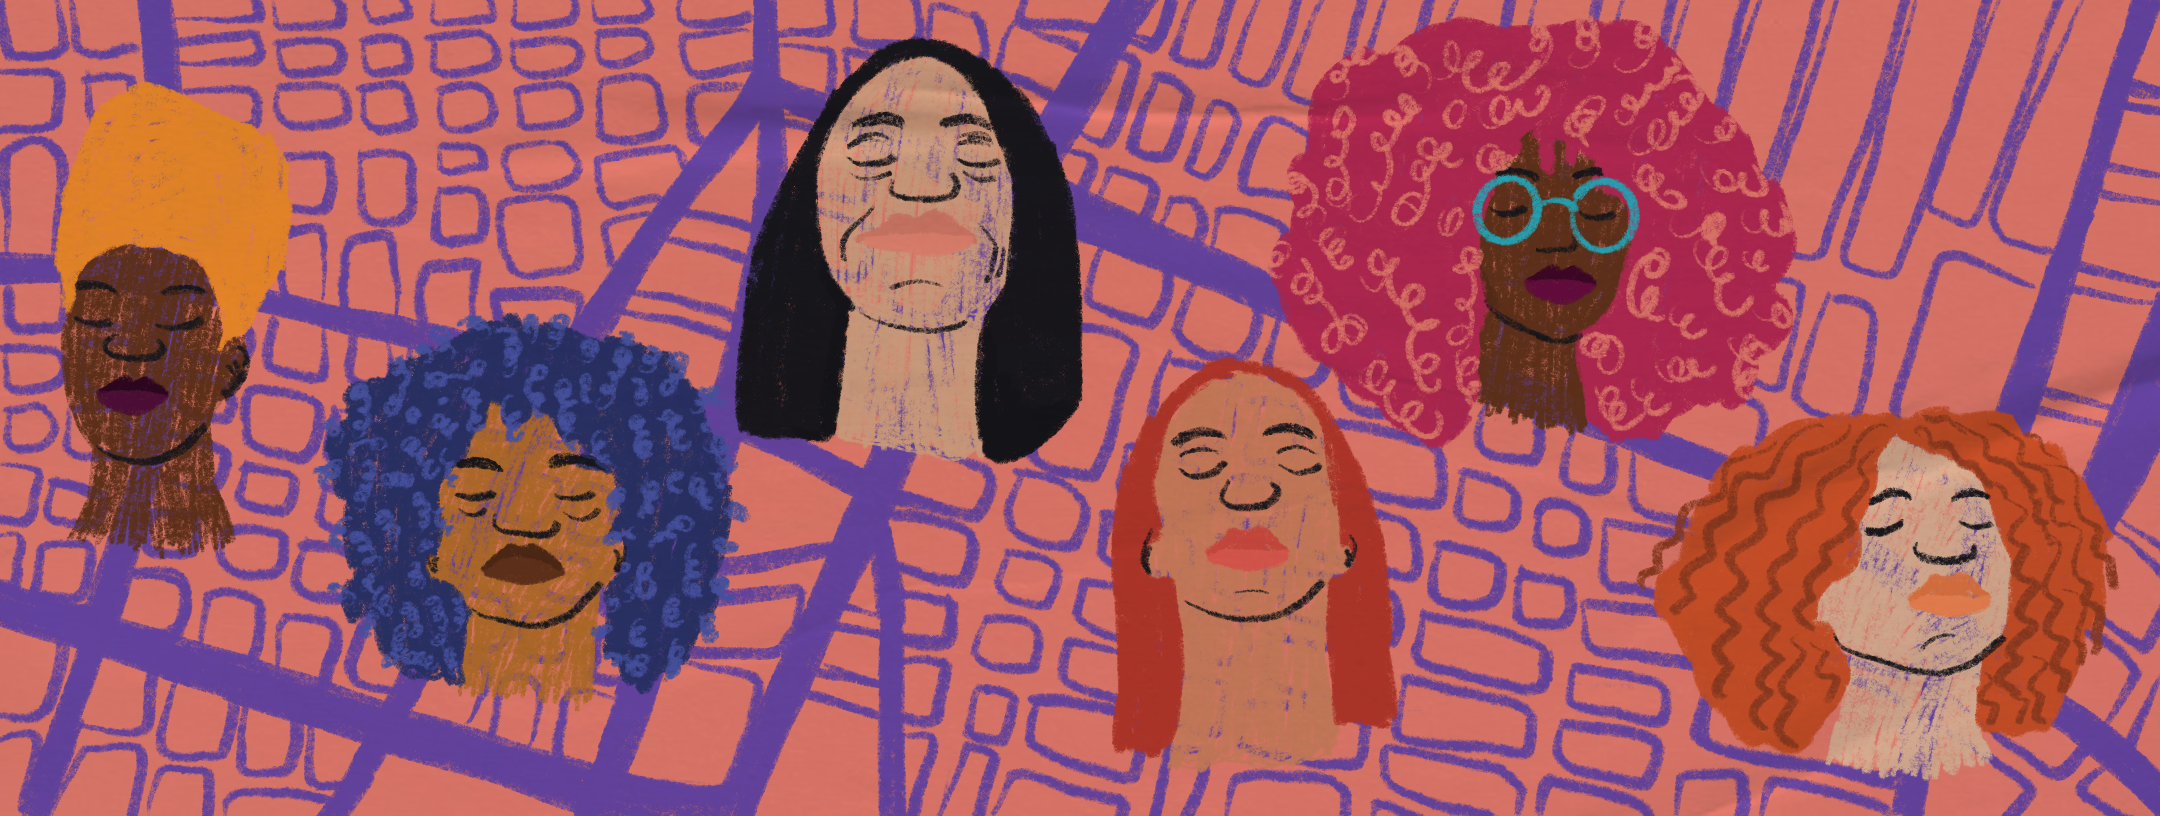 Ilustração de plano de aula do edital Igualdade de Gênero na Educação Básica. Sobrepostos a um mapa, há seis rostos de mulheres. Ilustradora: Barbara Quintino.